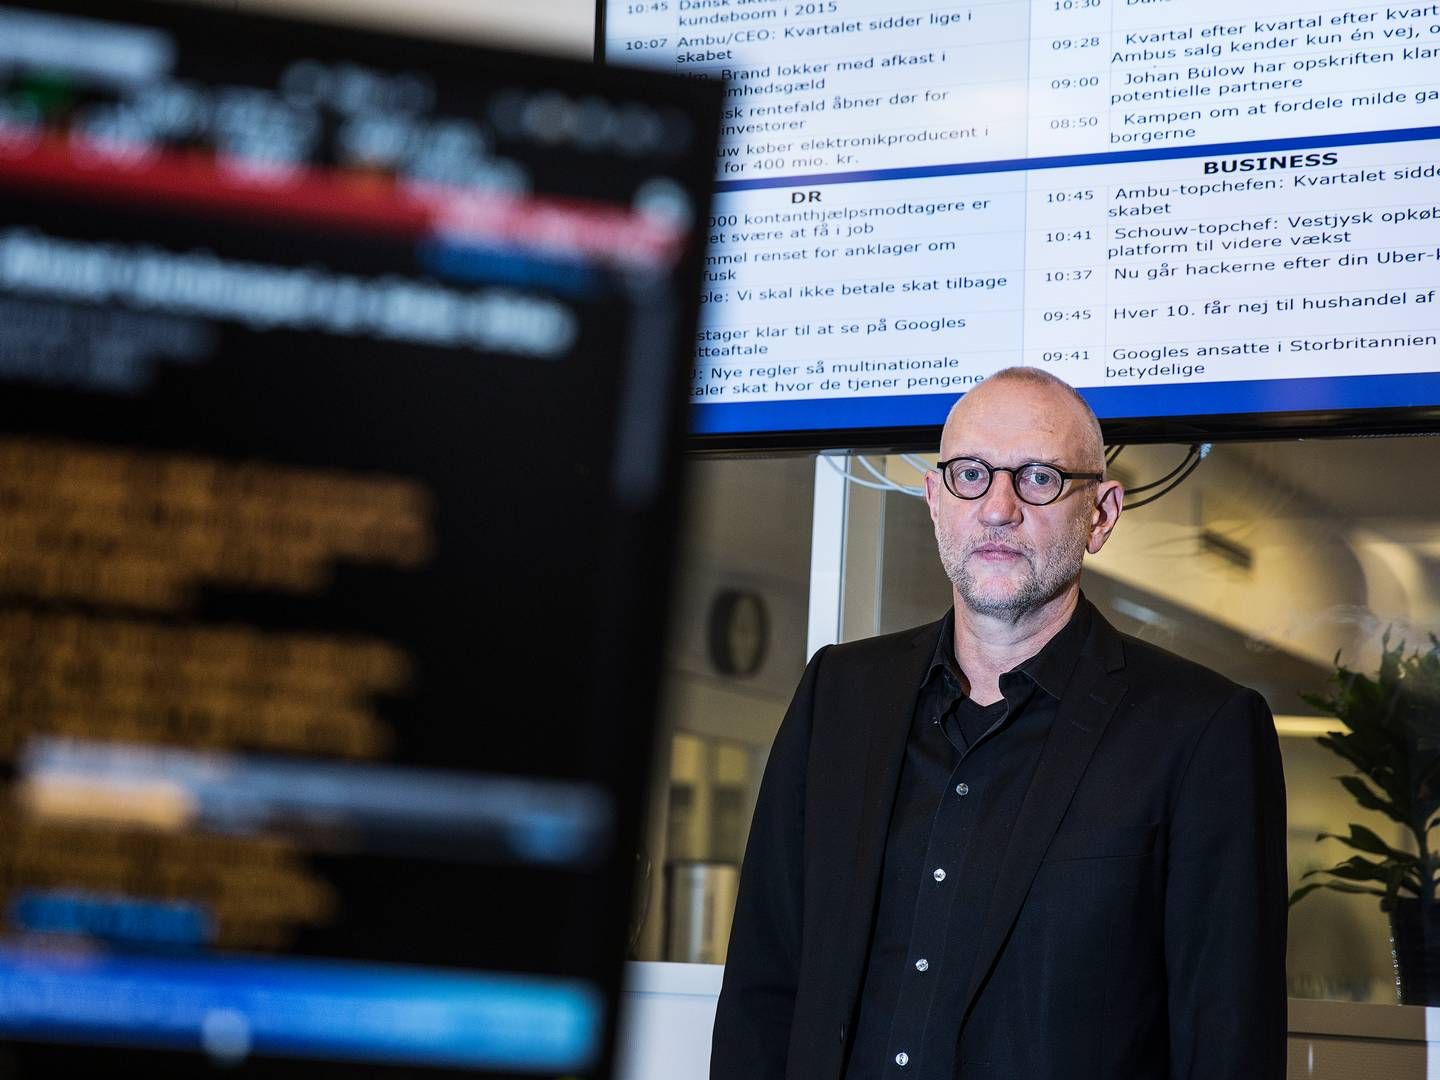 Lars Vesterløkke er er netop fratrådt som adm. direktør og chefredaktør på Ritzau for at forfølge en konsulent- og bestyrelseskarriere. | Foto: Niels Hougaard